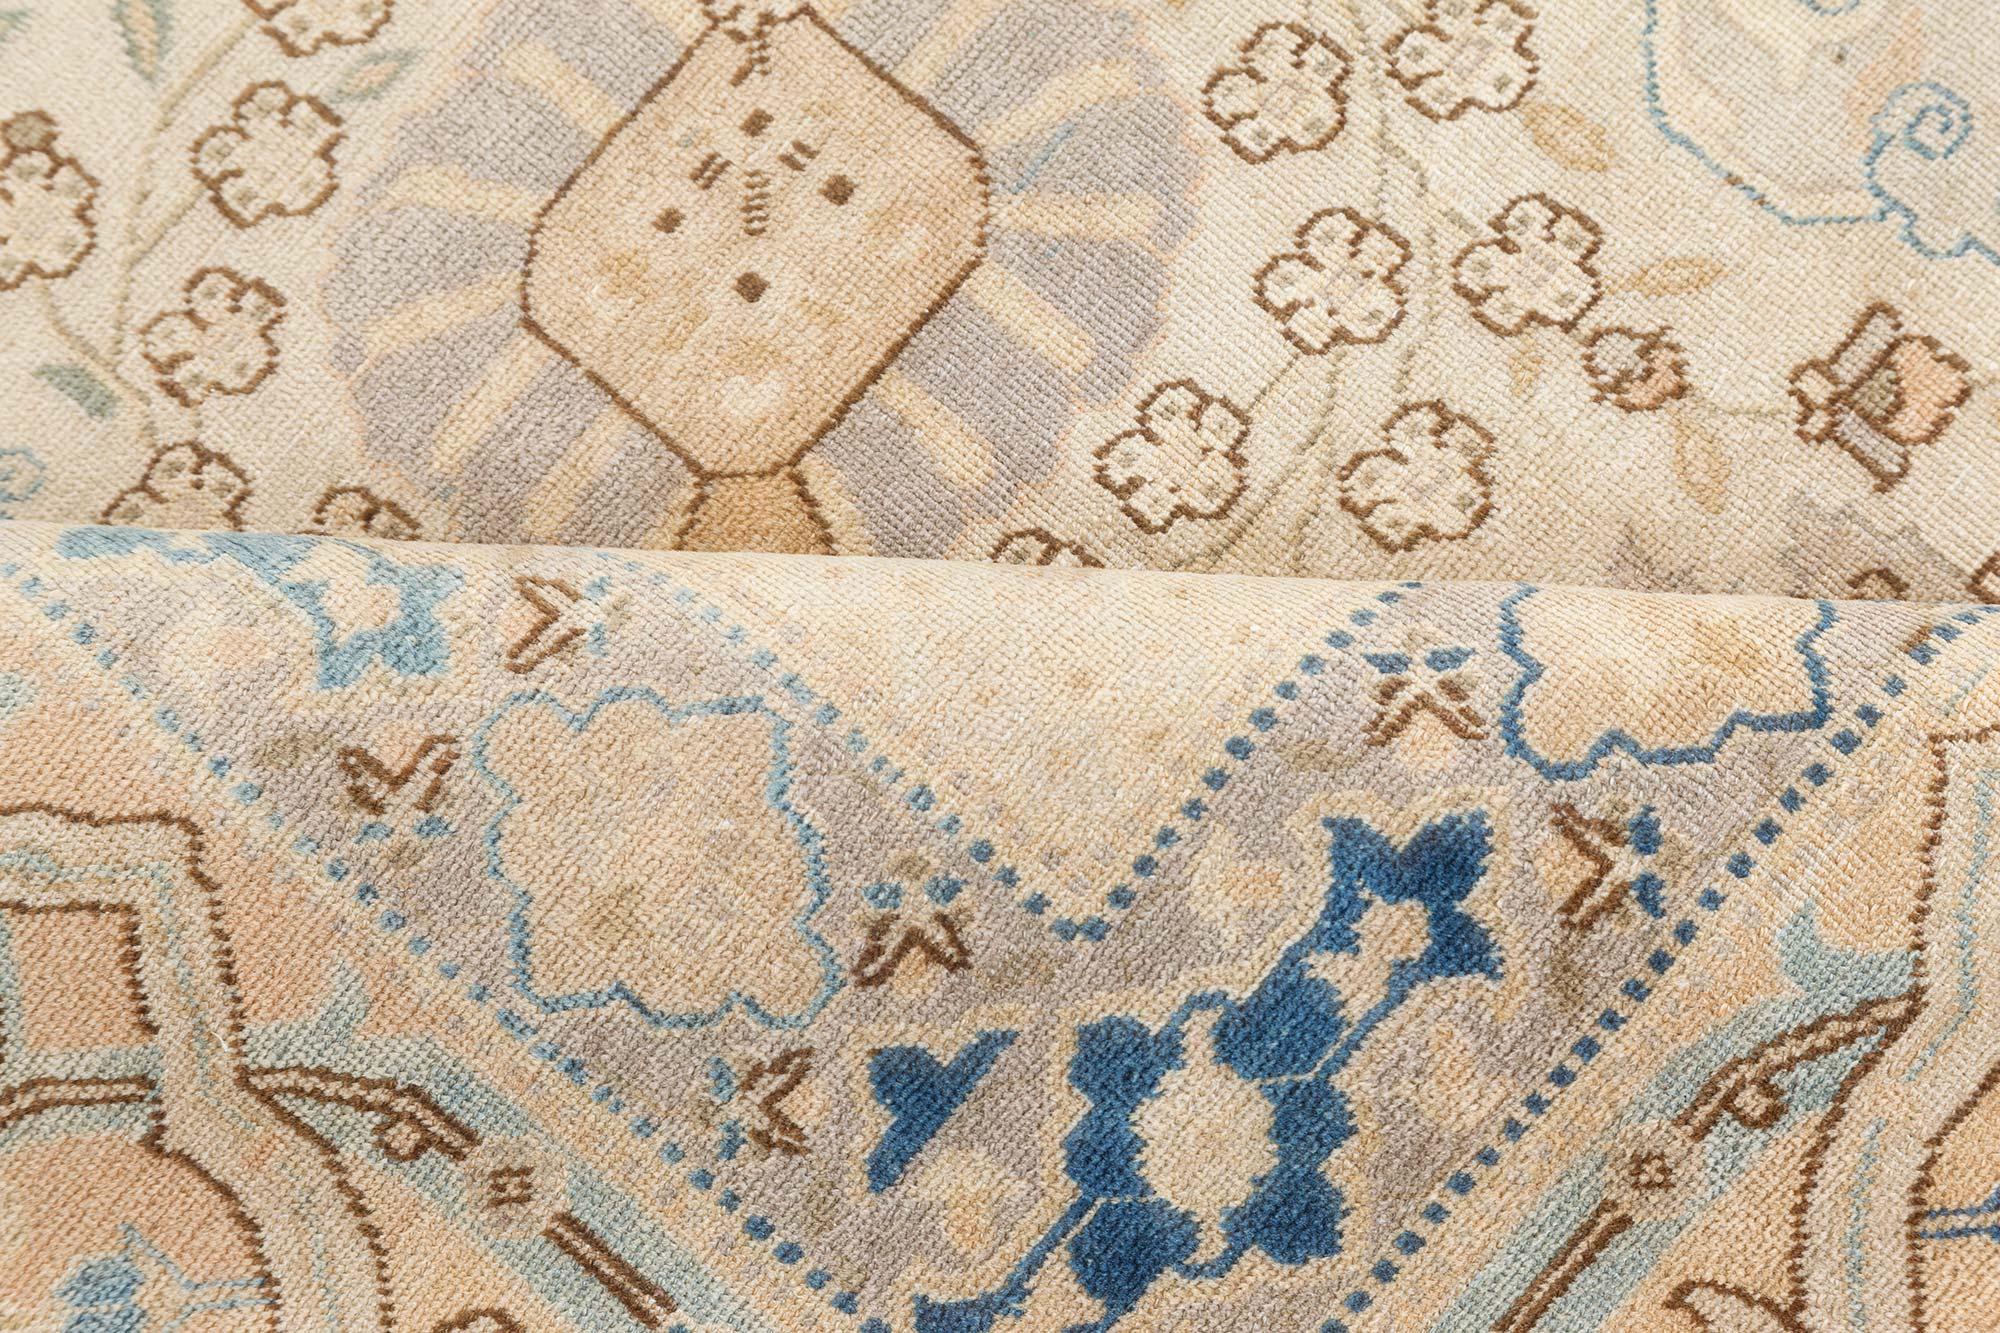 Authentic Persian Tabriz rug by Doris Leslie Blau
Size: 11'8